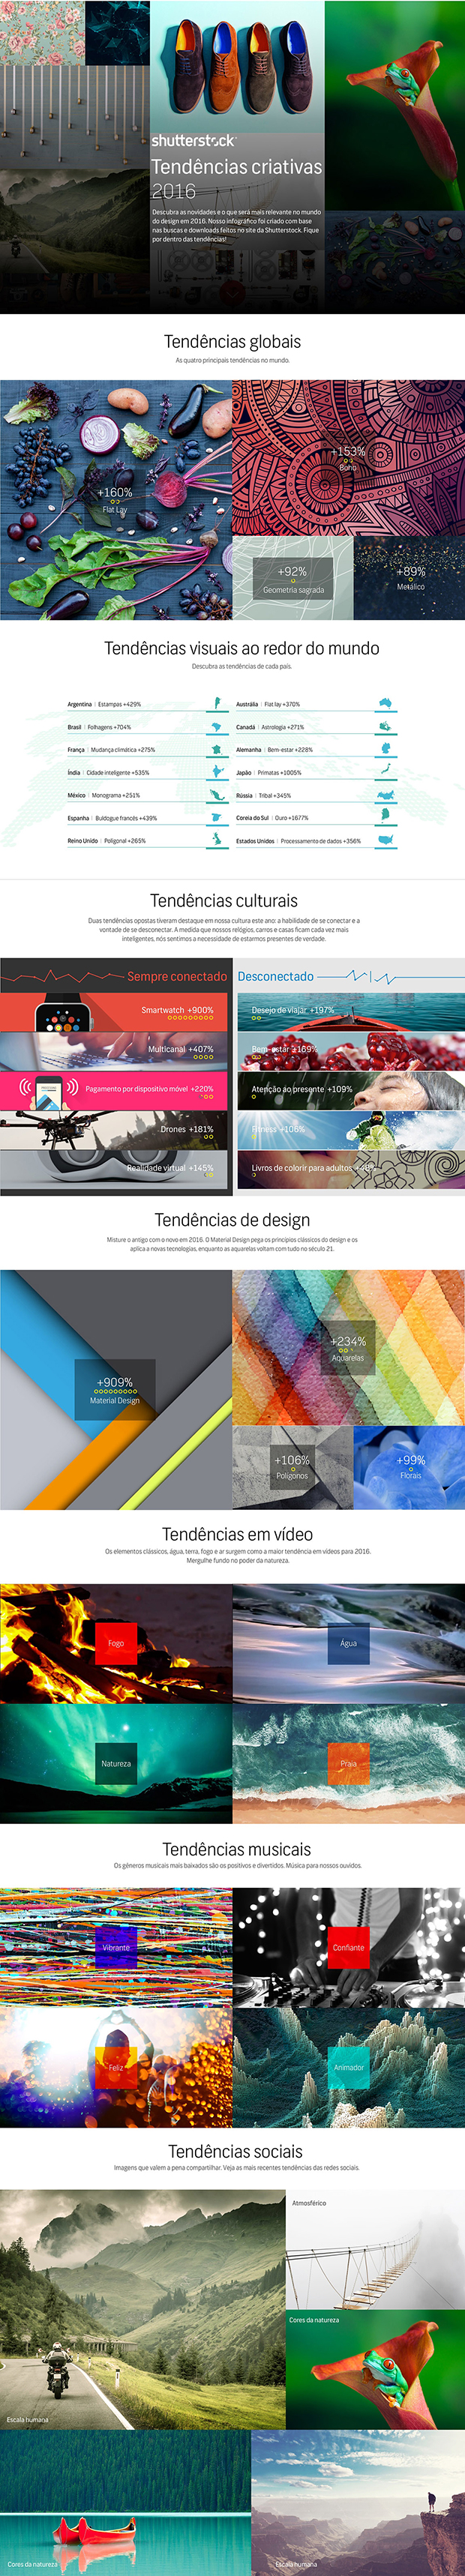 infográfico tendências criativas 2016 design shutterstock